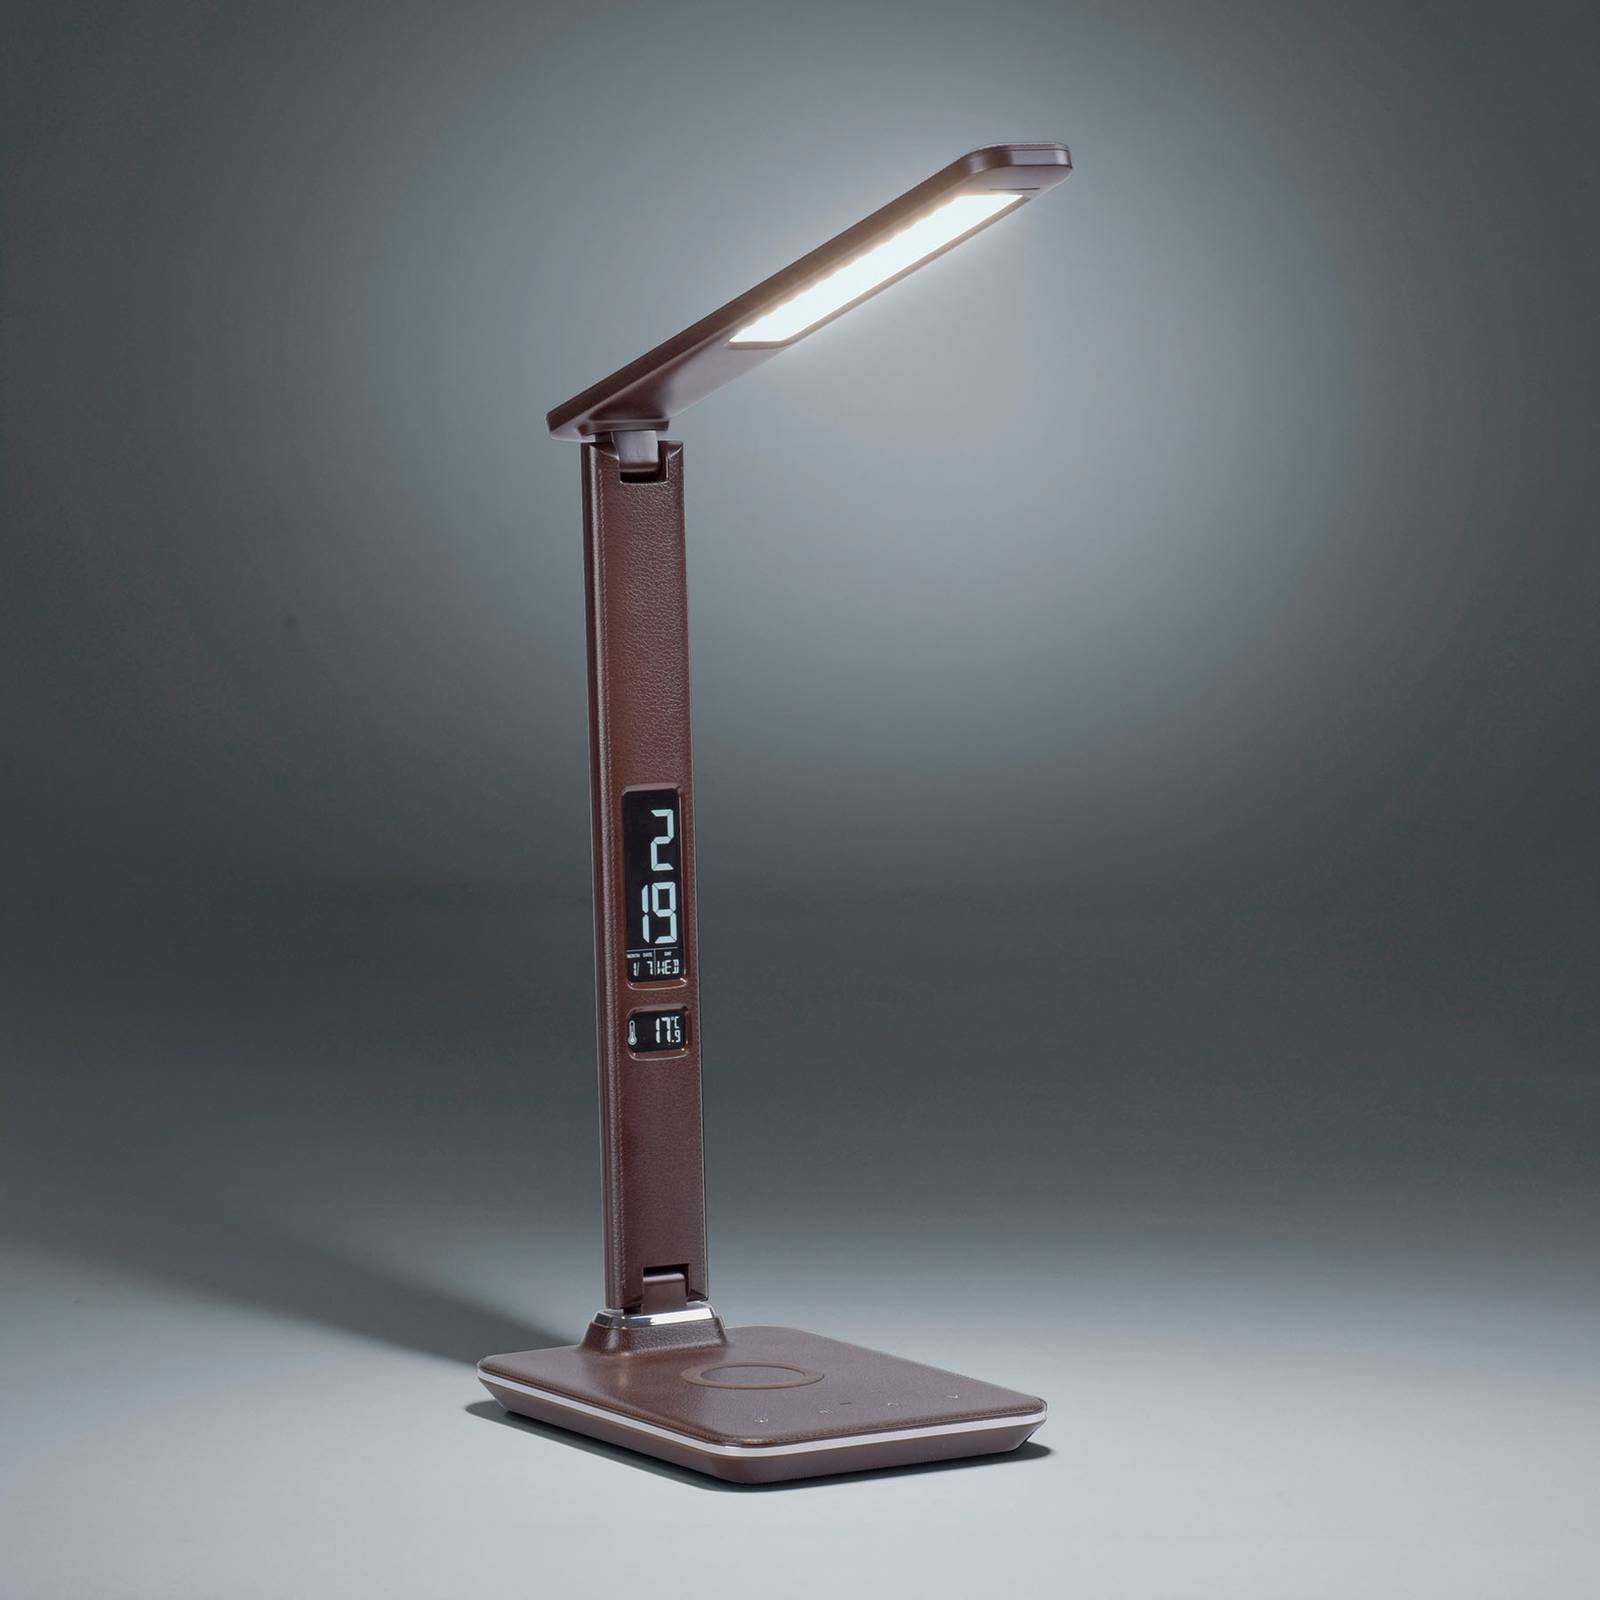 Paul Neuhaus LED stolní lampa Adriano, CCT, stmívatelná, hnědá